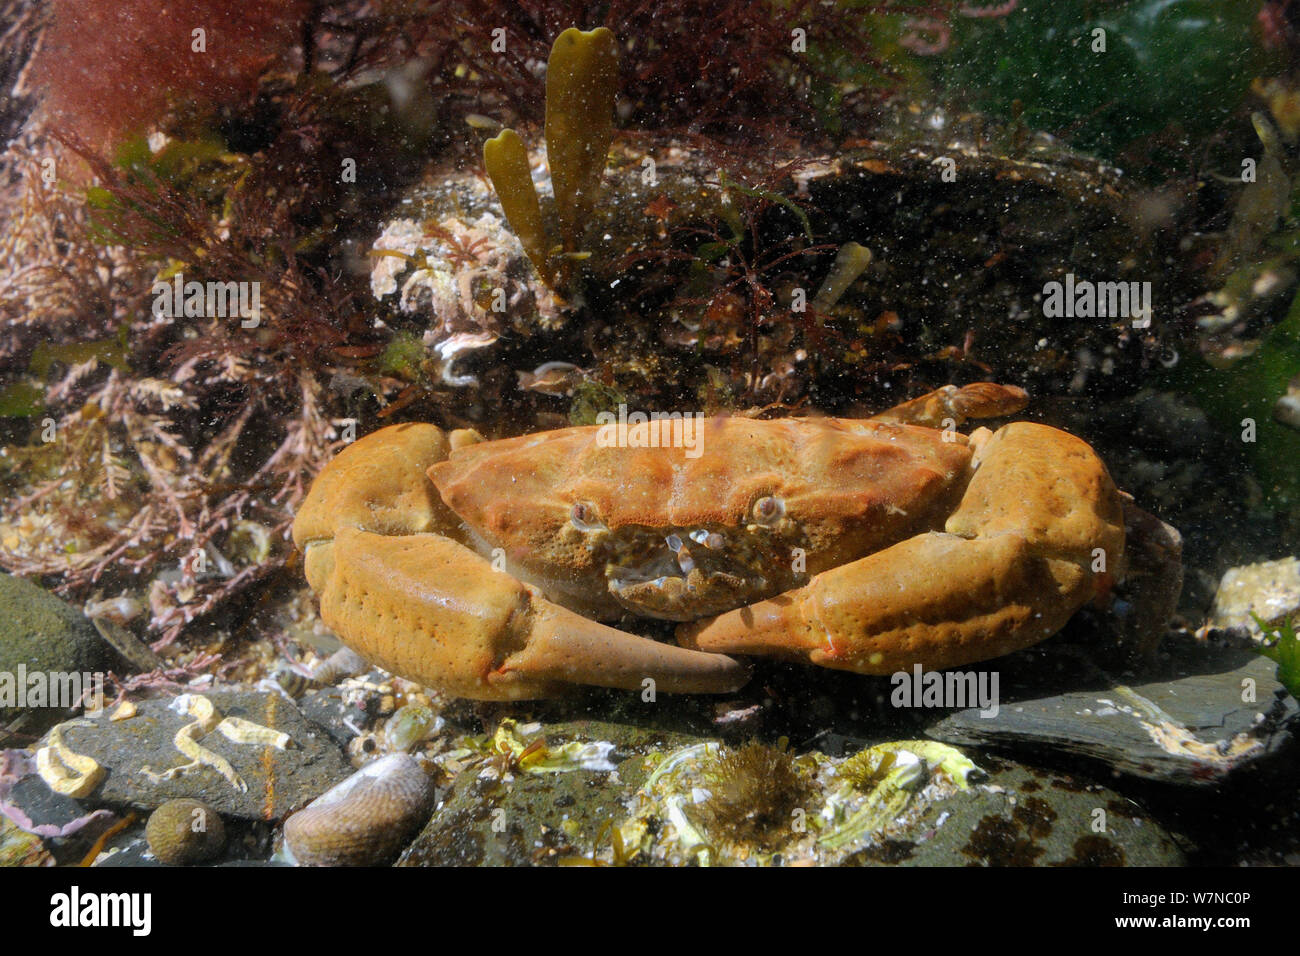 Der Montagu/zerfurcht Crab (Lophozozymus Xantho incisus/hydrophilus) im rockpool, in der Nähe von Falmouth, Cornwall, UK, August. Stockfoto